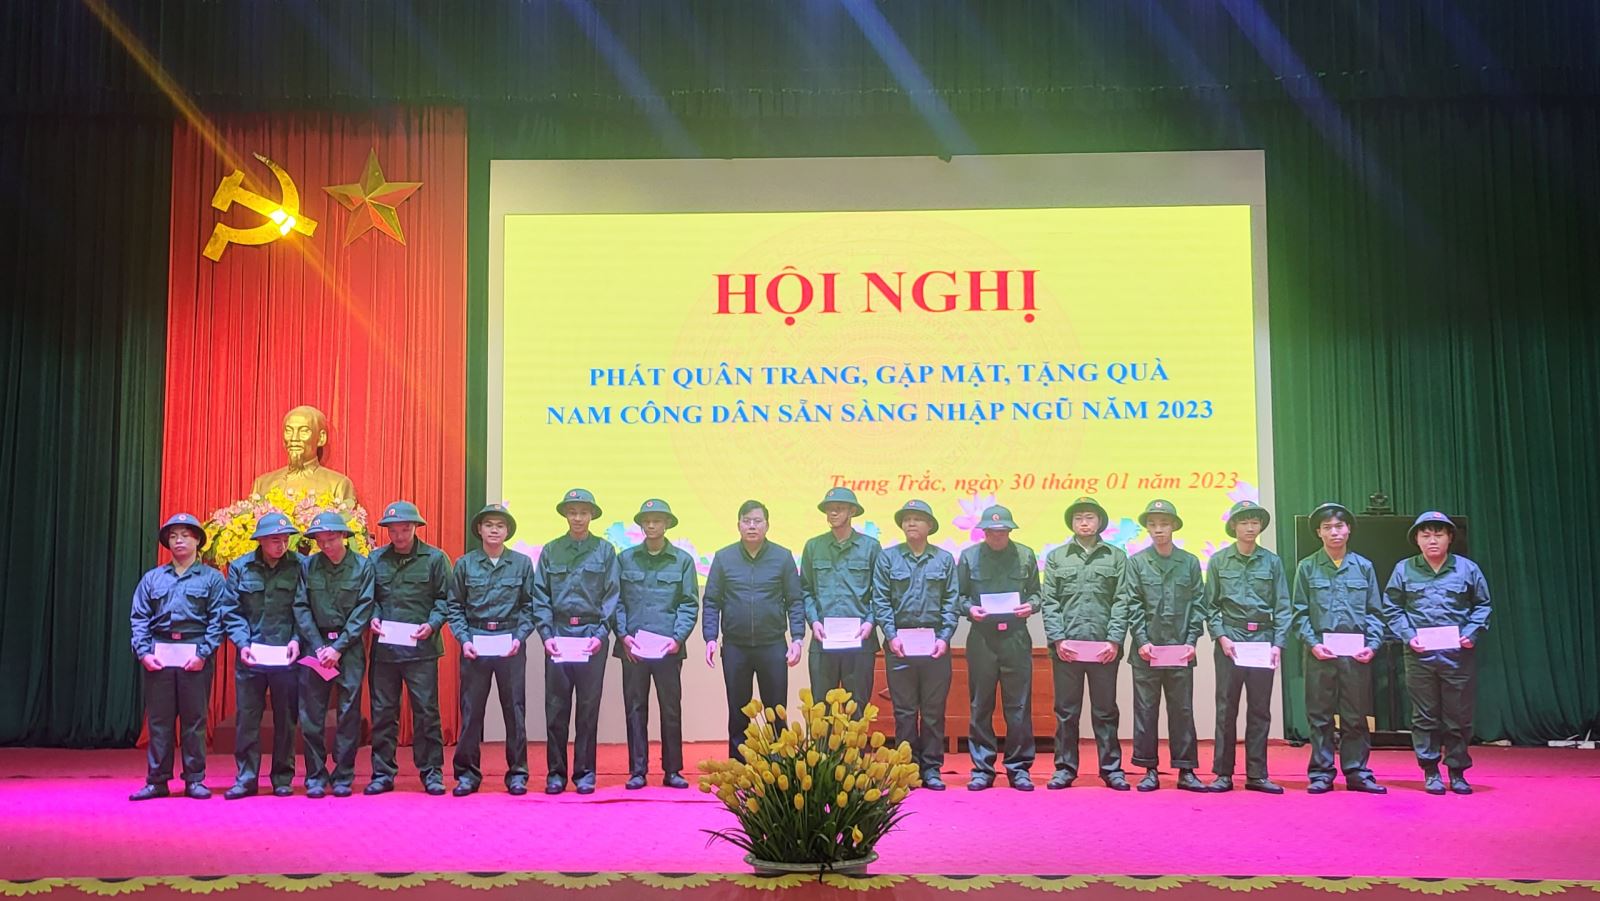 Trưng Trắc tổ chức hội nghị phát quân trang, gặp mặt, tặng quà nam công dân sẵn sàng nhập ngũ năm 2023